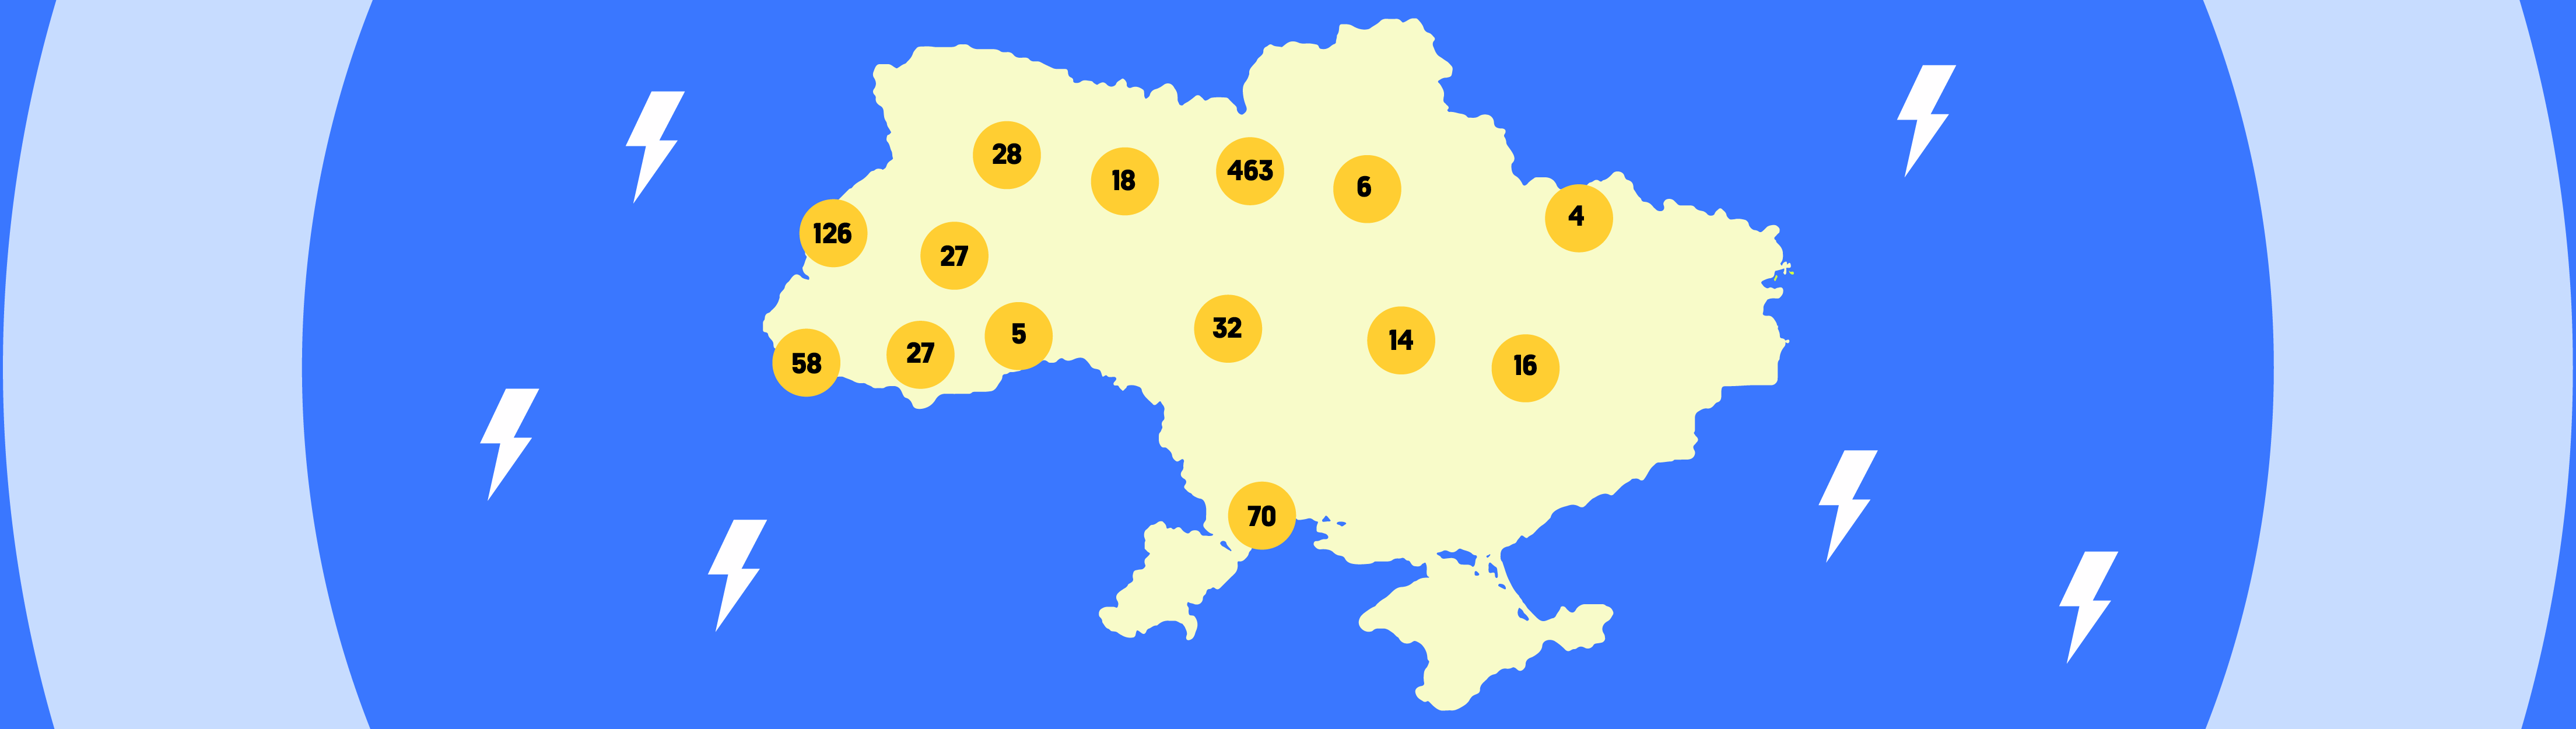 Ринок електромобілів в Україні